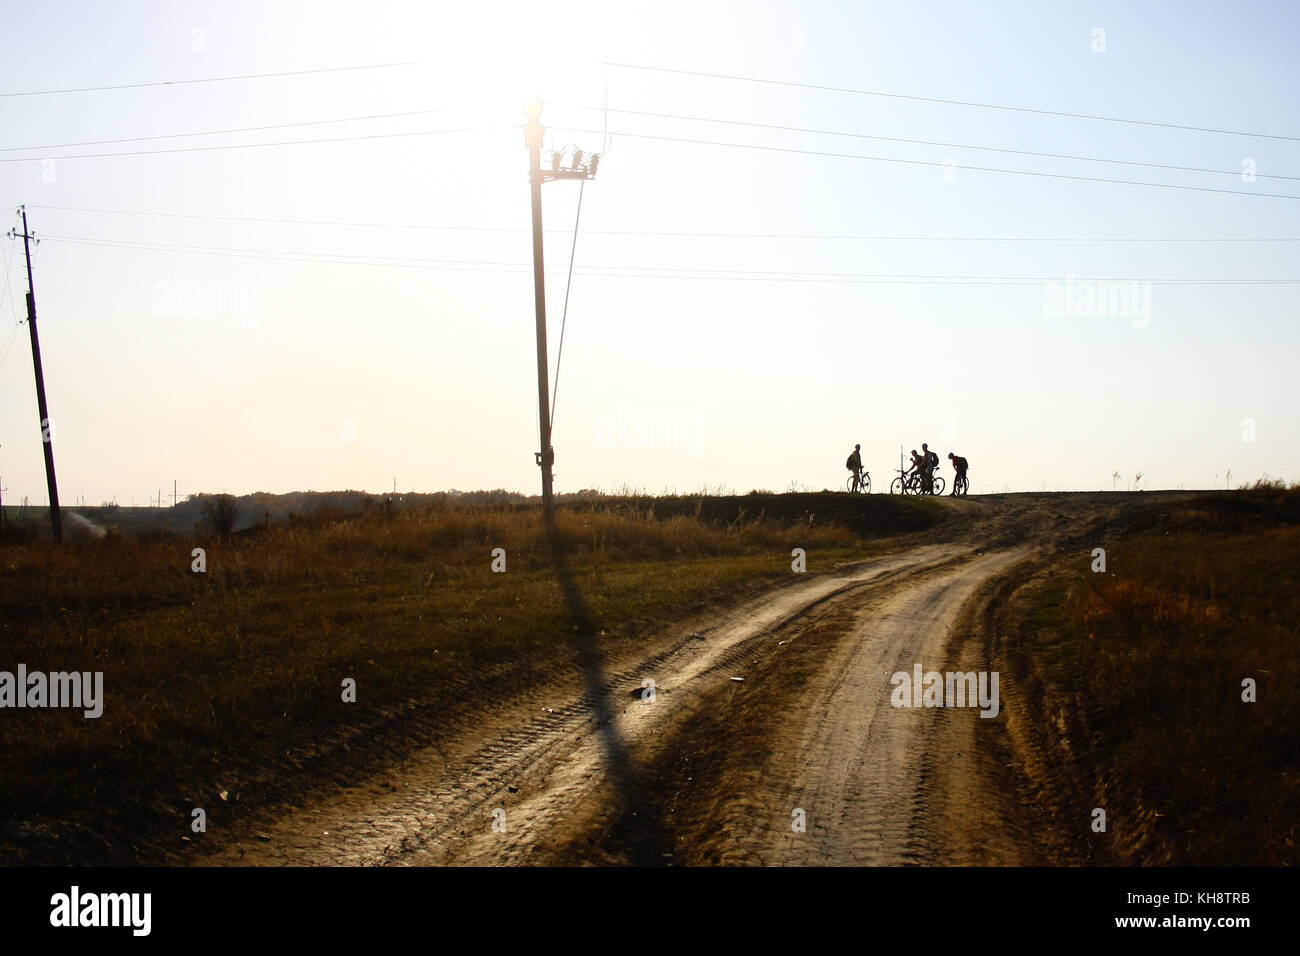 Silhouette de quatre cyclistes sur une route de gravier ouvert Banque D'Images